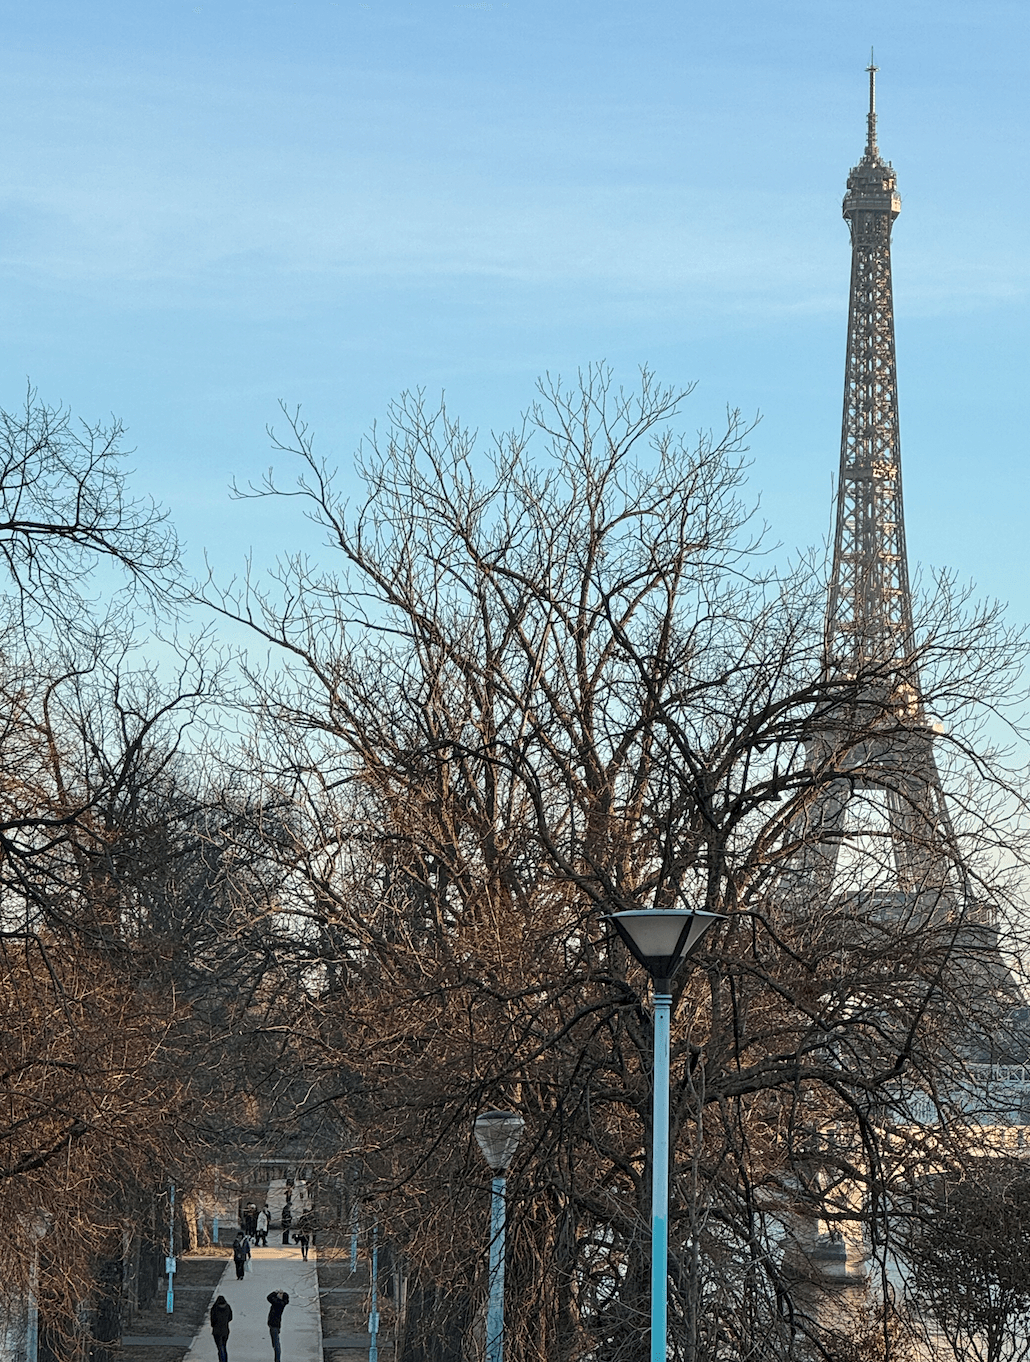 巴黎艾菲爾鐵塔 Eiffel Tower
La Tour Eiffel
地鐵6號線「Bir-Hakeim」站，或是6號線、9號線到「Trocadero」站、8號線到「Ecole Militaire」站下車。
RER C線在「Champ de Mars」

Pont de Bir-Hakeim 比爾阿克姆橋
全面啟動Inception
 Place du Trocadéro 夏佑宮
Champ de Mars 戰神廣場
塞納河遊船
巴黎自由女神像